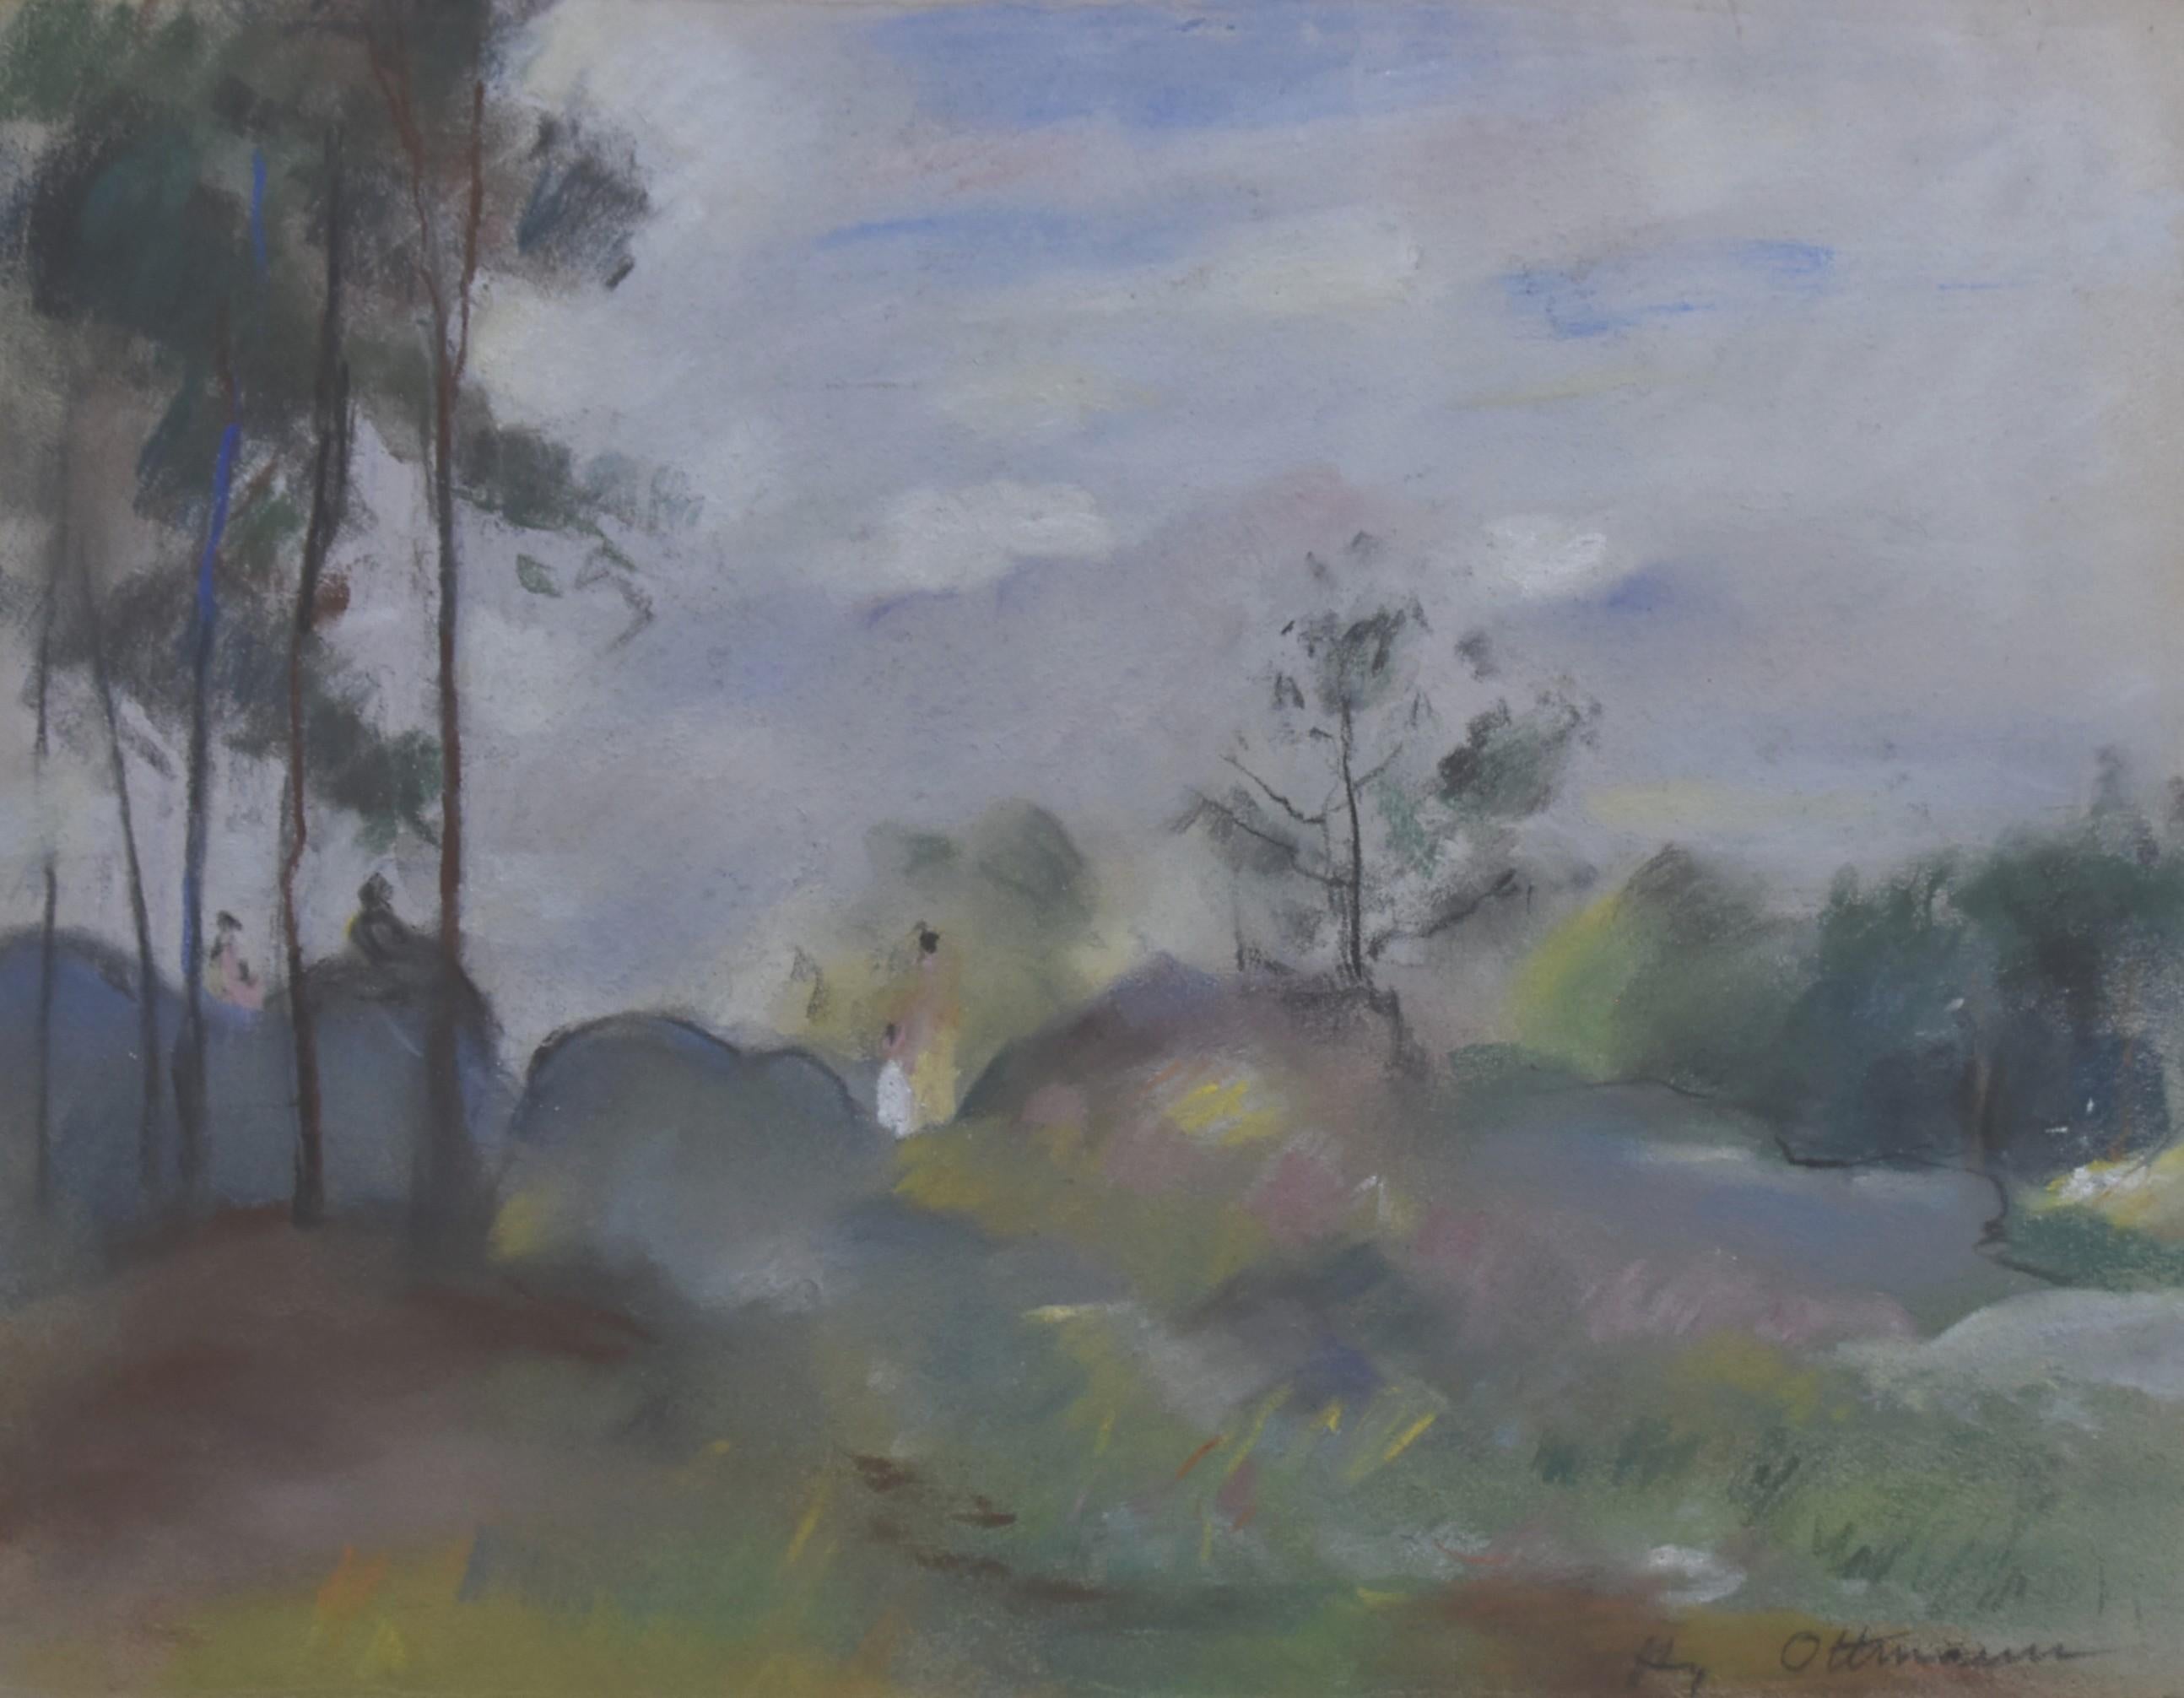 Henri Ottmann (1877-1927)  
"Orée du bois par brume", Ein Wald im Nebel
signiert unten rechts
Pastell auf Papier 
24 x 32 cm
In gutem Zustand
In einem Vintage-Rahmen : 43,5 x 53 cm Die Vergoldung des Rahmens fehlt an vielen Stellen.

 Henri Ottmann